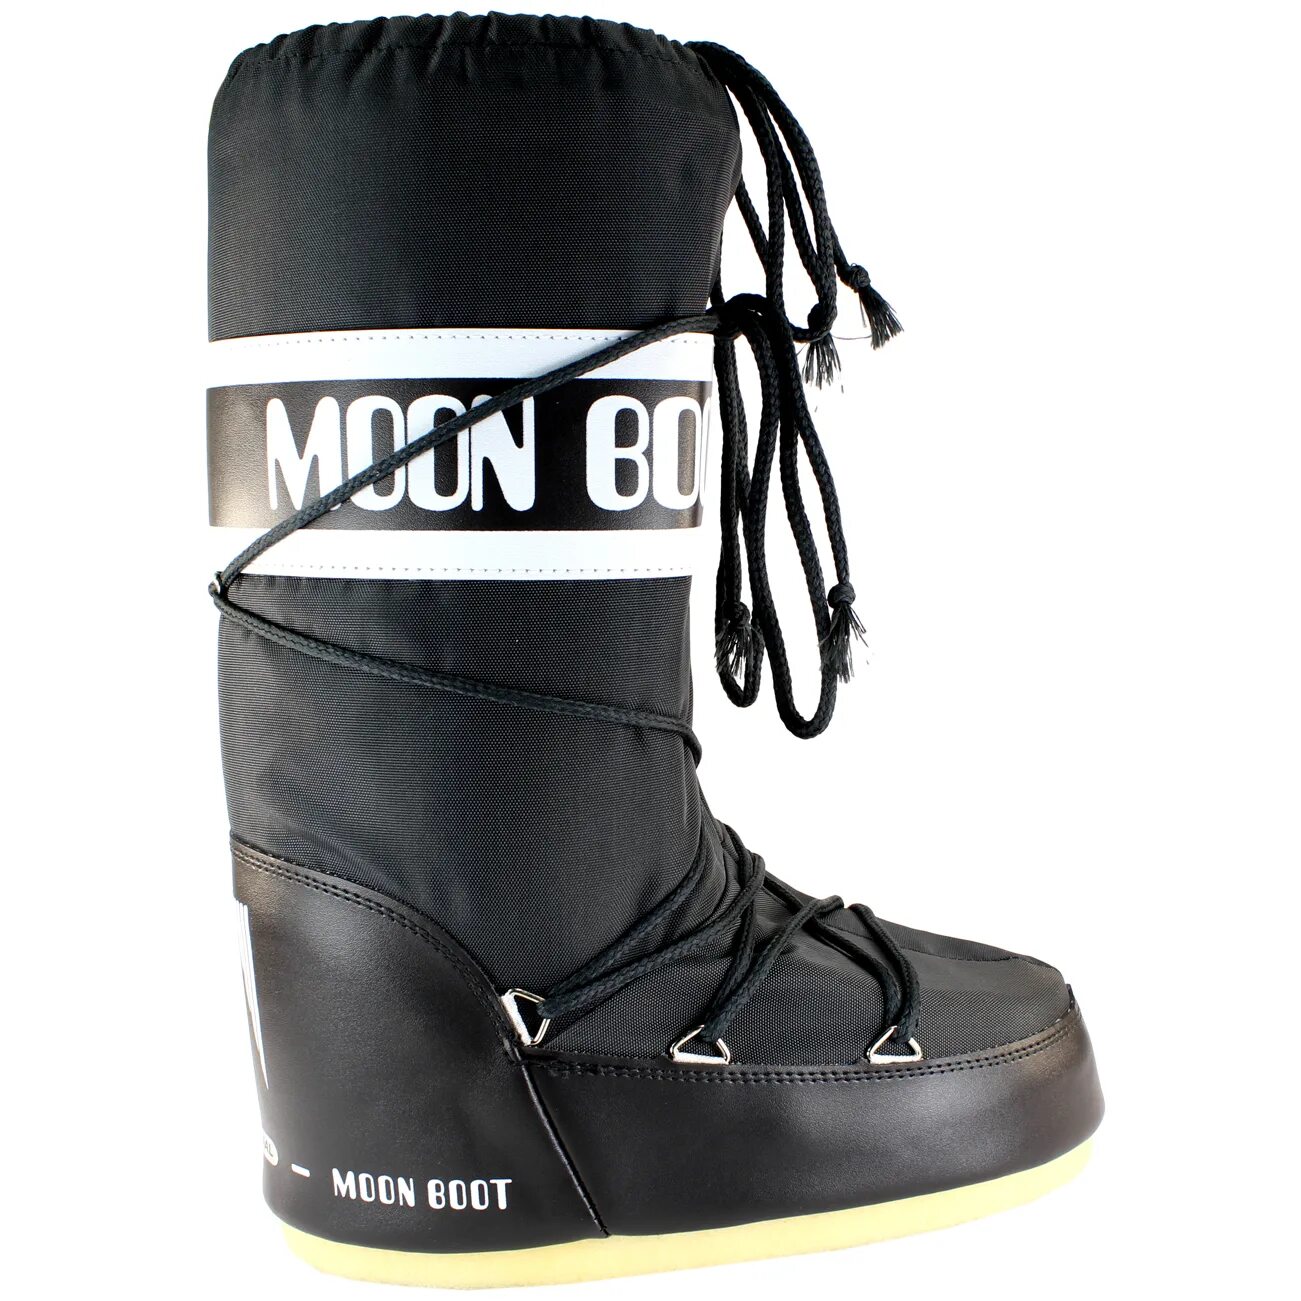 Обувь муна. Moon Boots tecnica. Moon Boot подошва. Moon Boot мужские зимние. Moon Boot tecnica Original 2012.